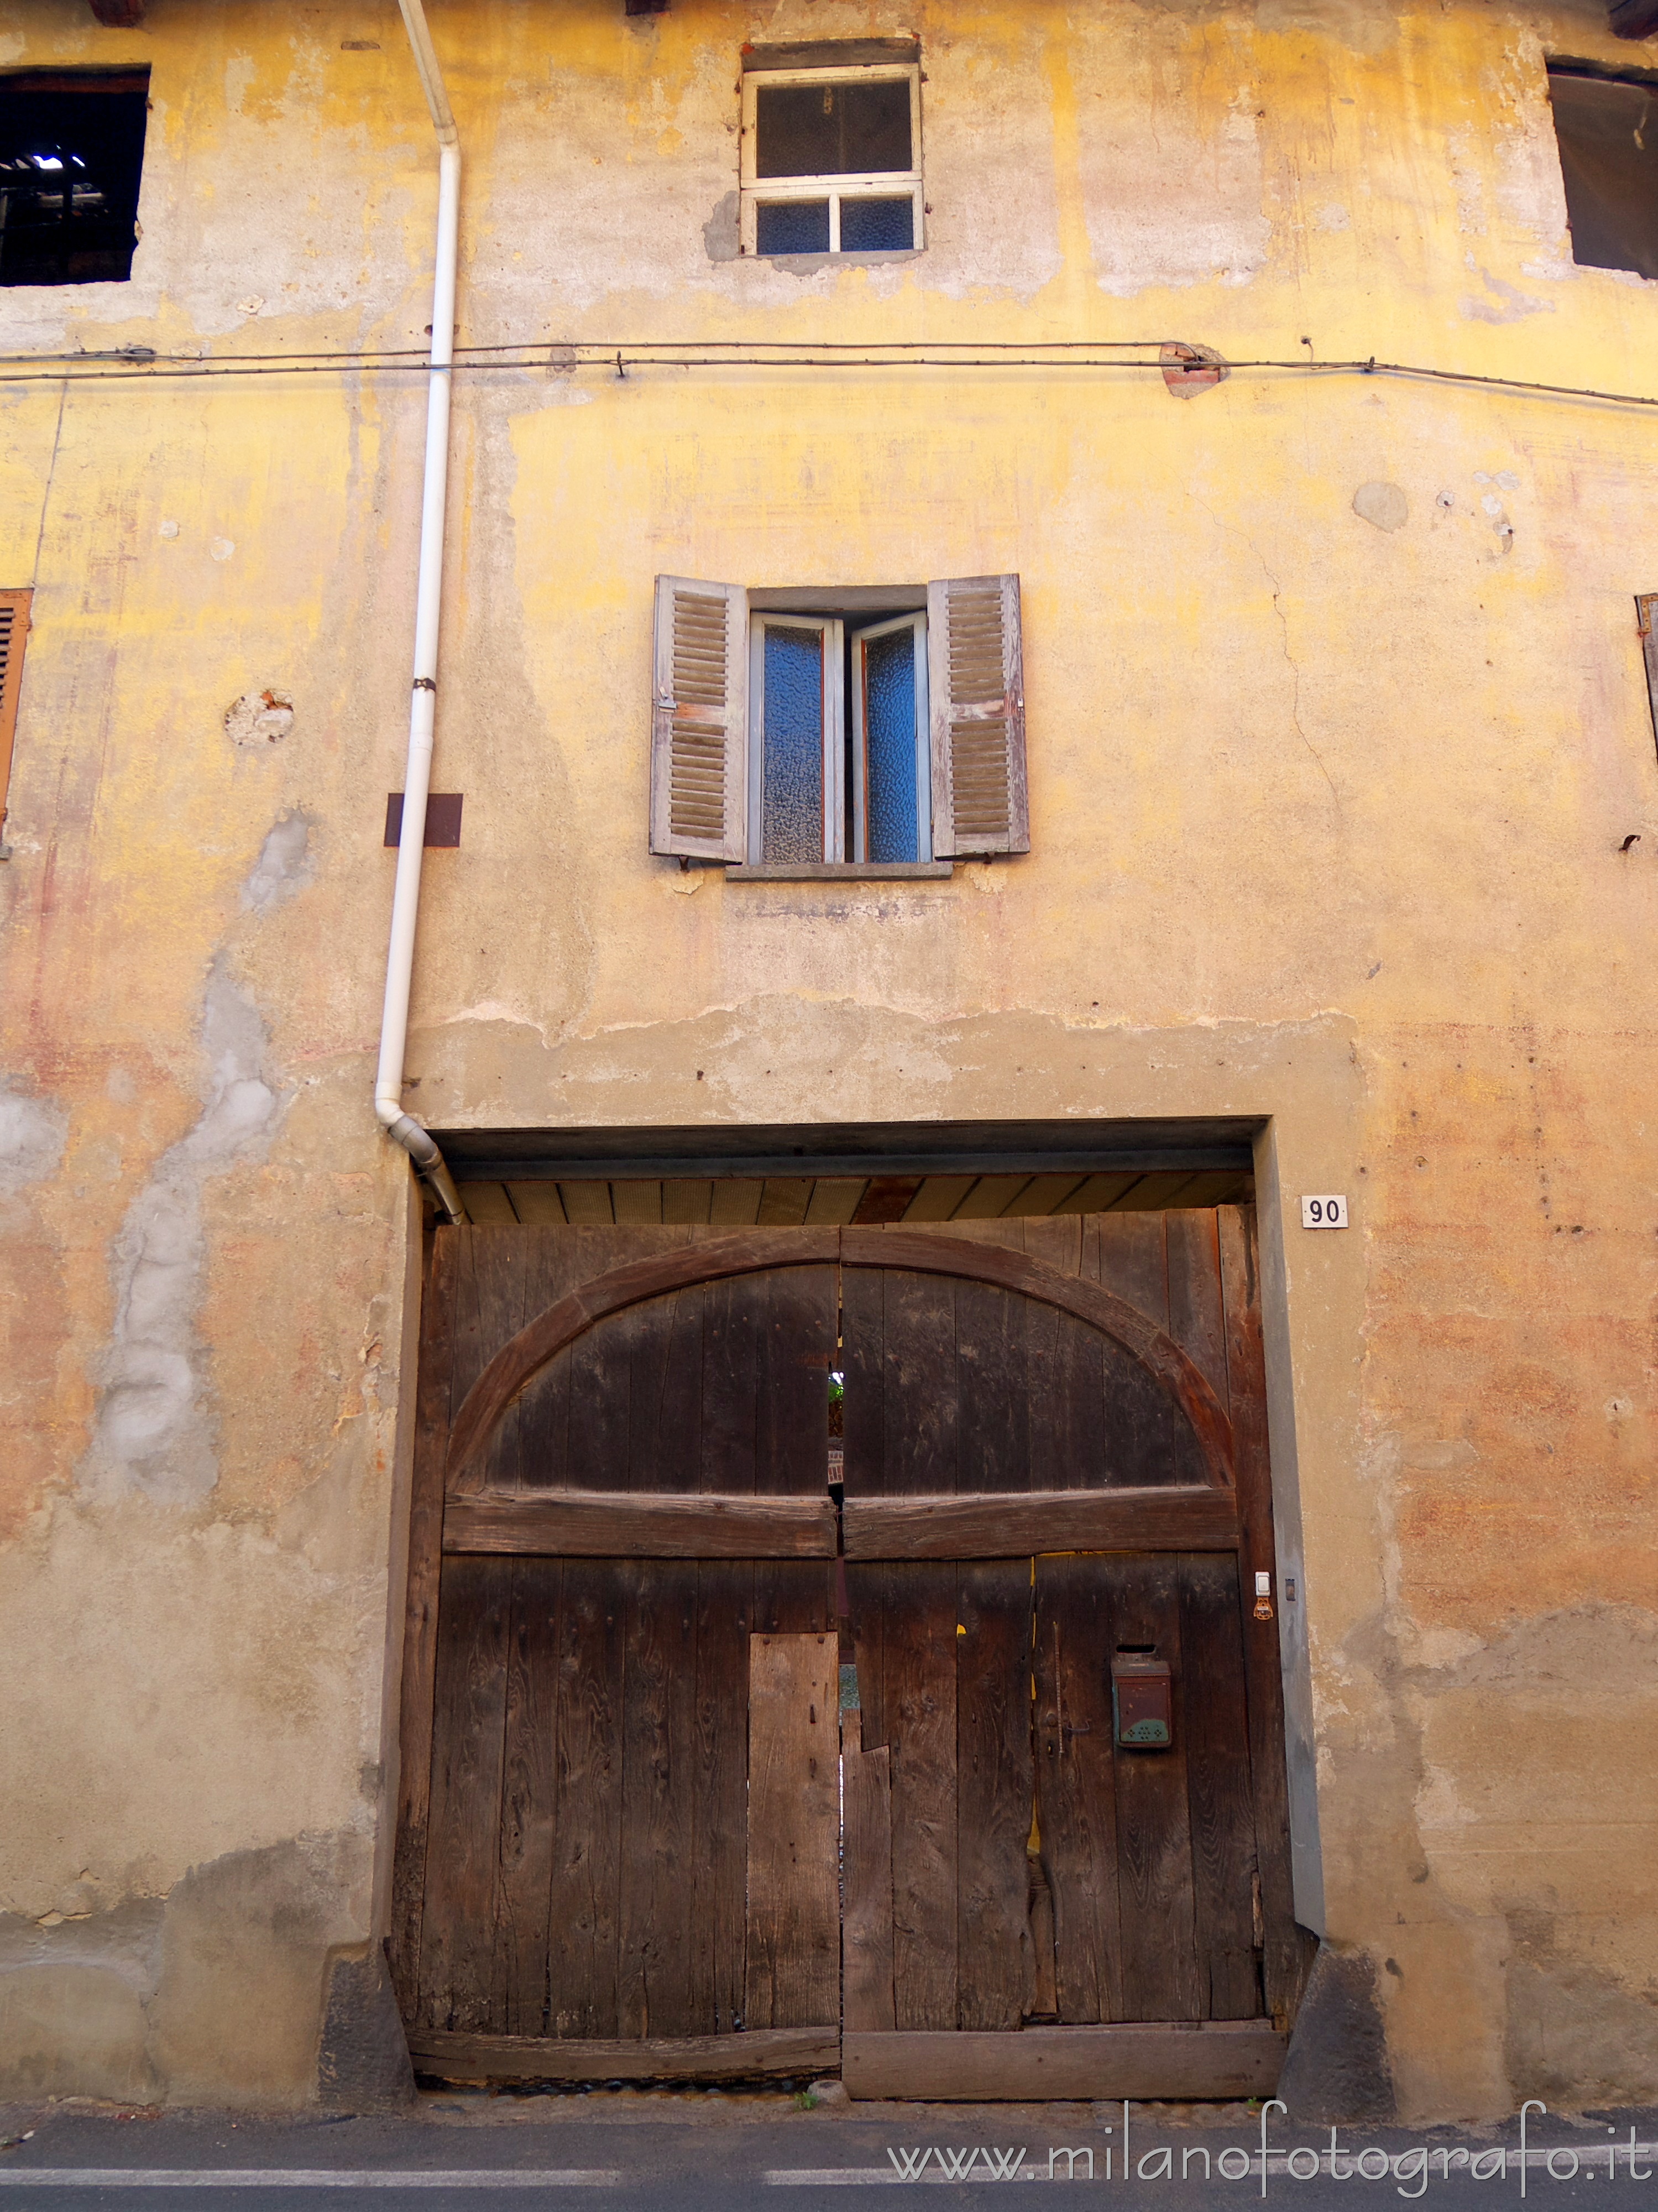 Candelo (Biella, Italy): Wooden front door in an old house - Candelo (Biella, Italy)